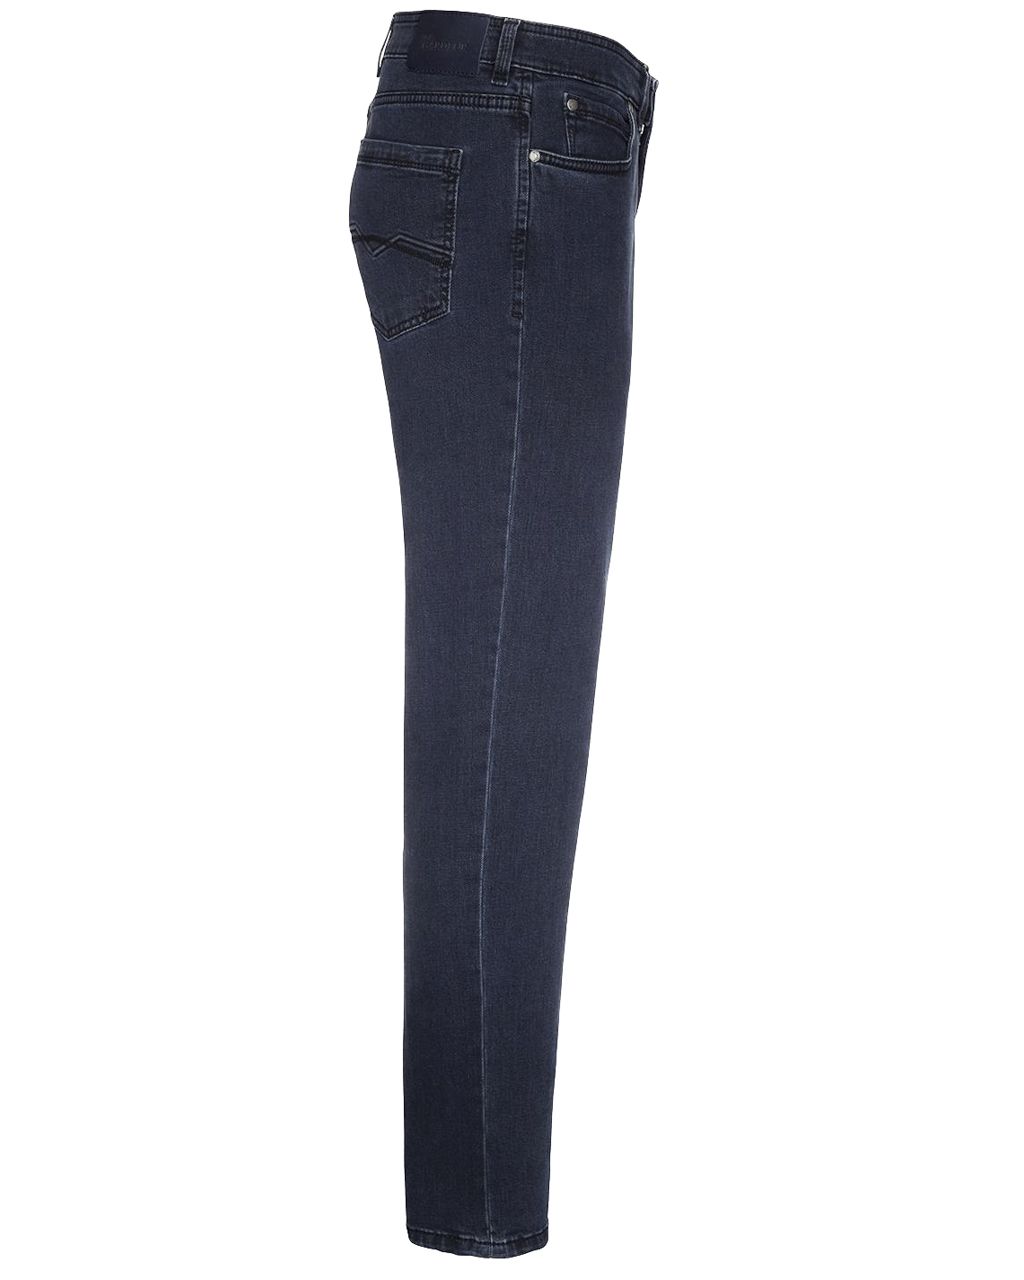 Gardeur Batu Jeans Donker blauw 075704-001-31/32